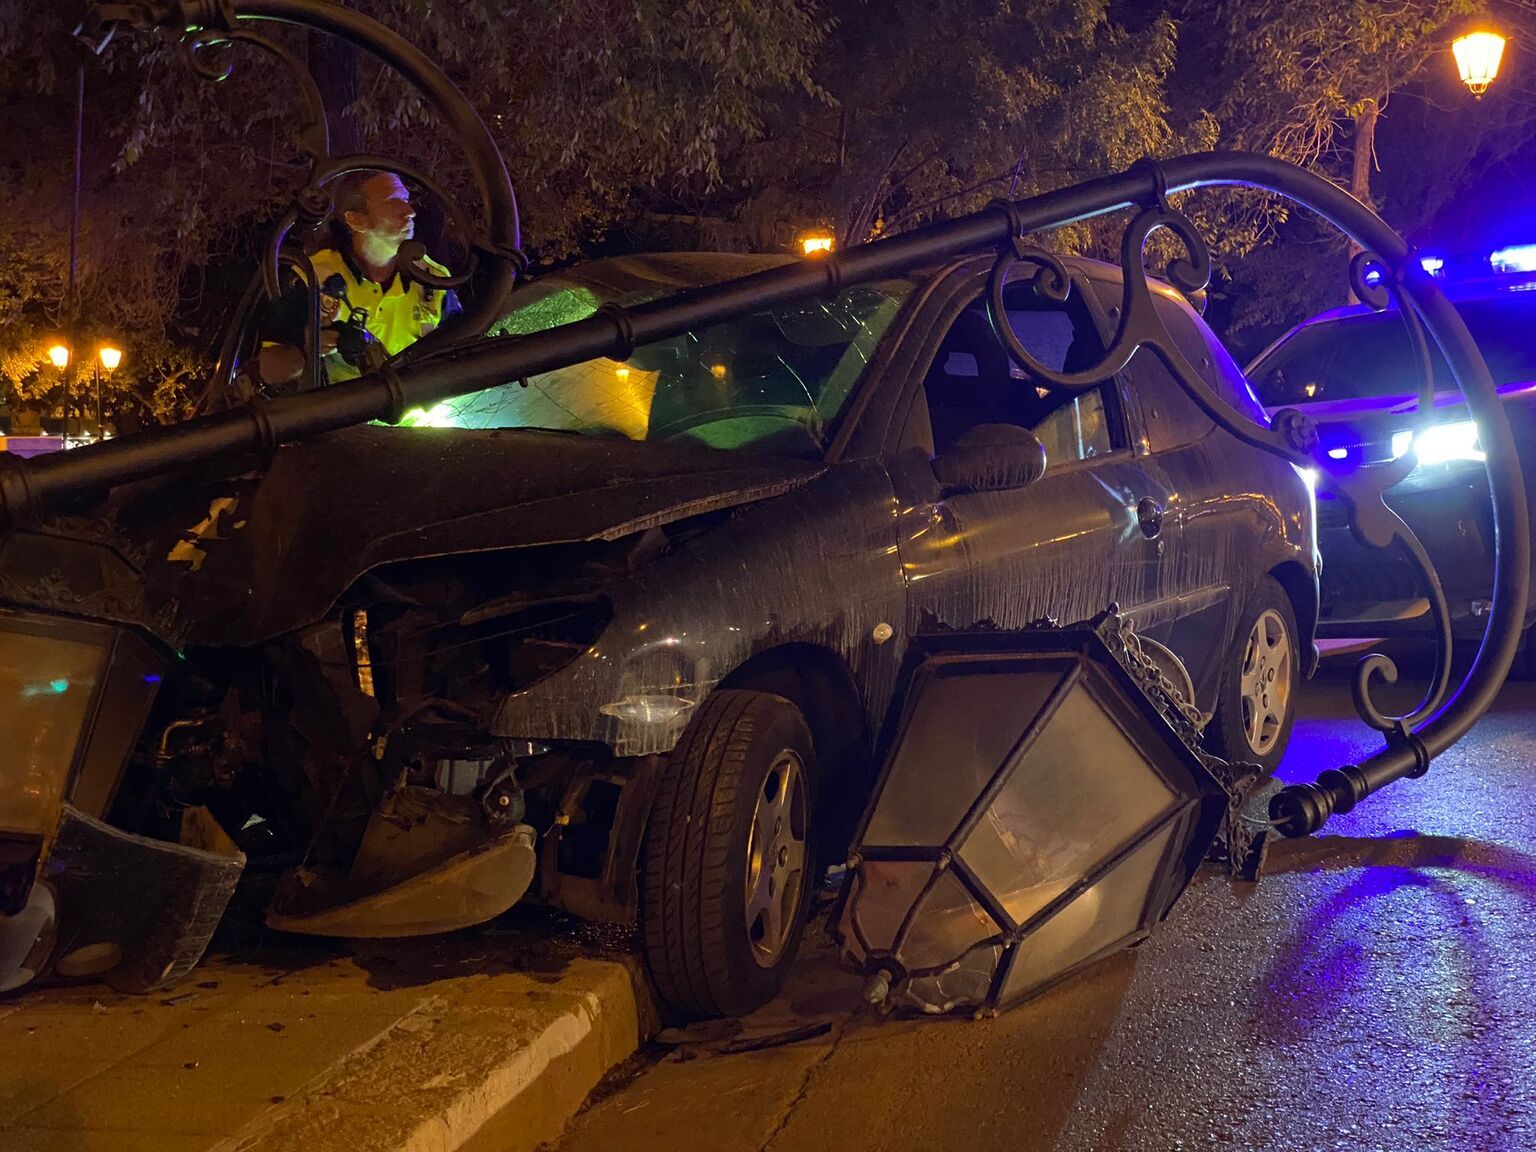 Accidentes de tráfico en Mallorca| FOTOS: Choca contra una farola del Paseo Mallorca de Palma y se desploma sobre el coche